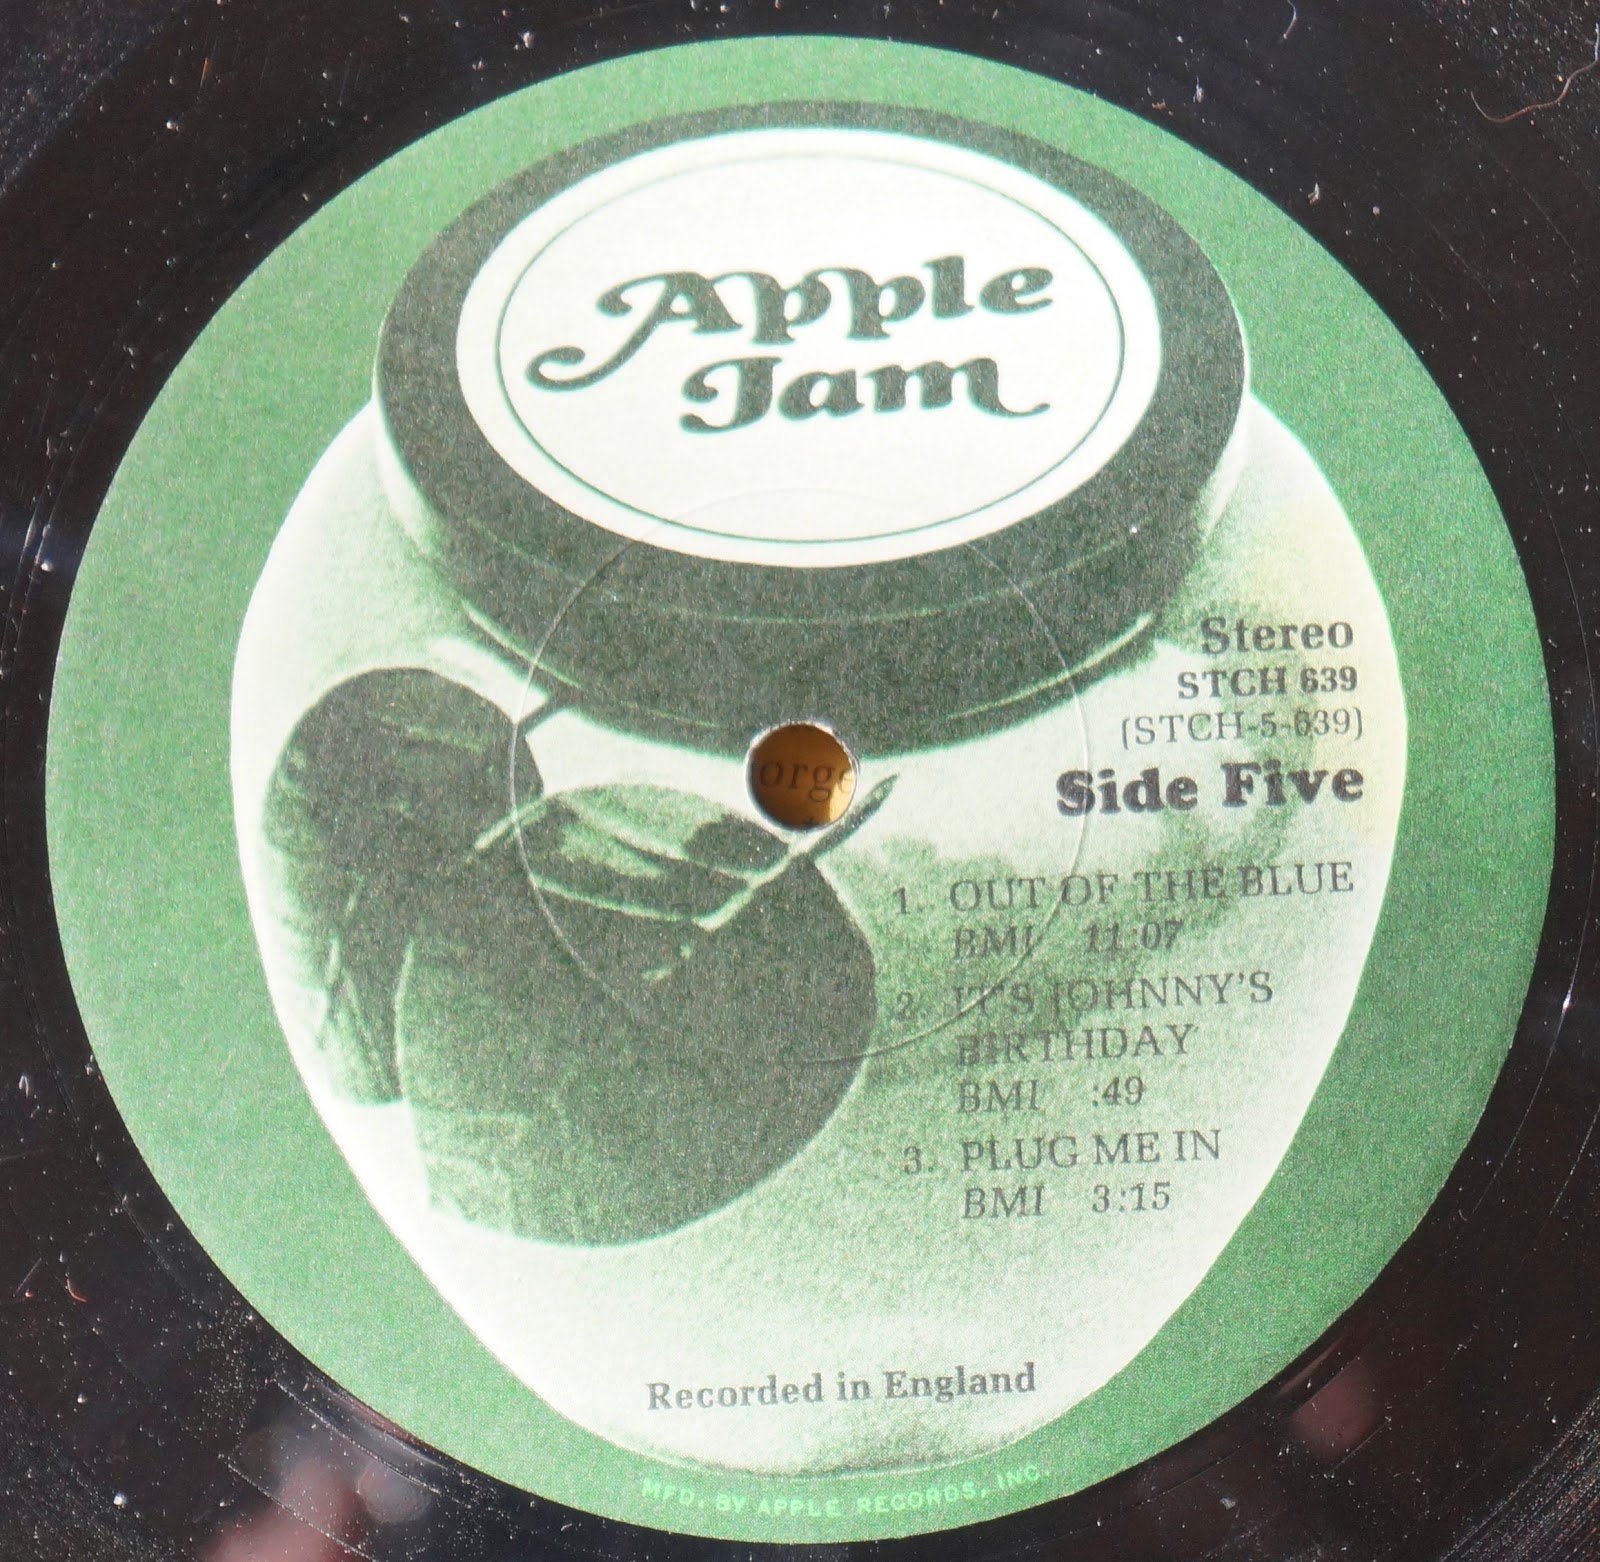 Juice is under the jam перевод. Apple Jam группа. Labels Apple Jam. Студия Apple records. Бобби киз.